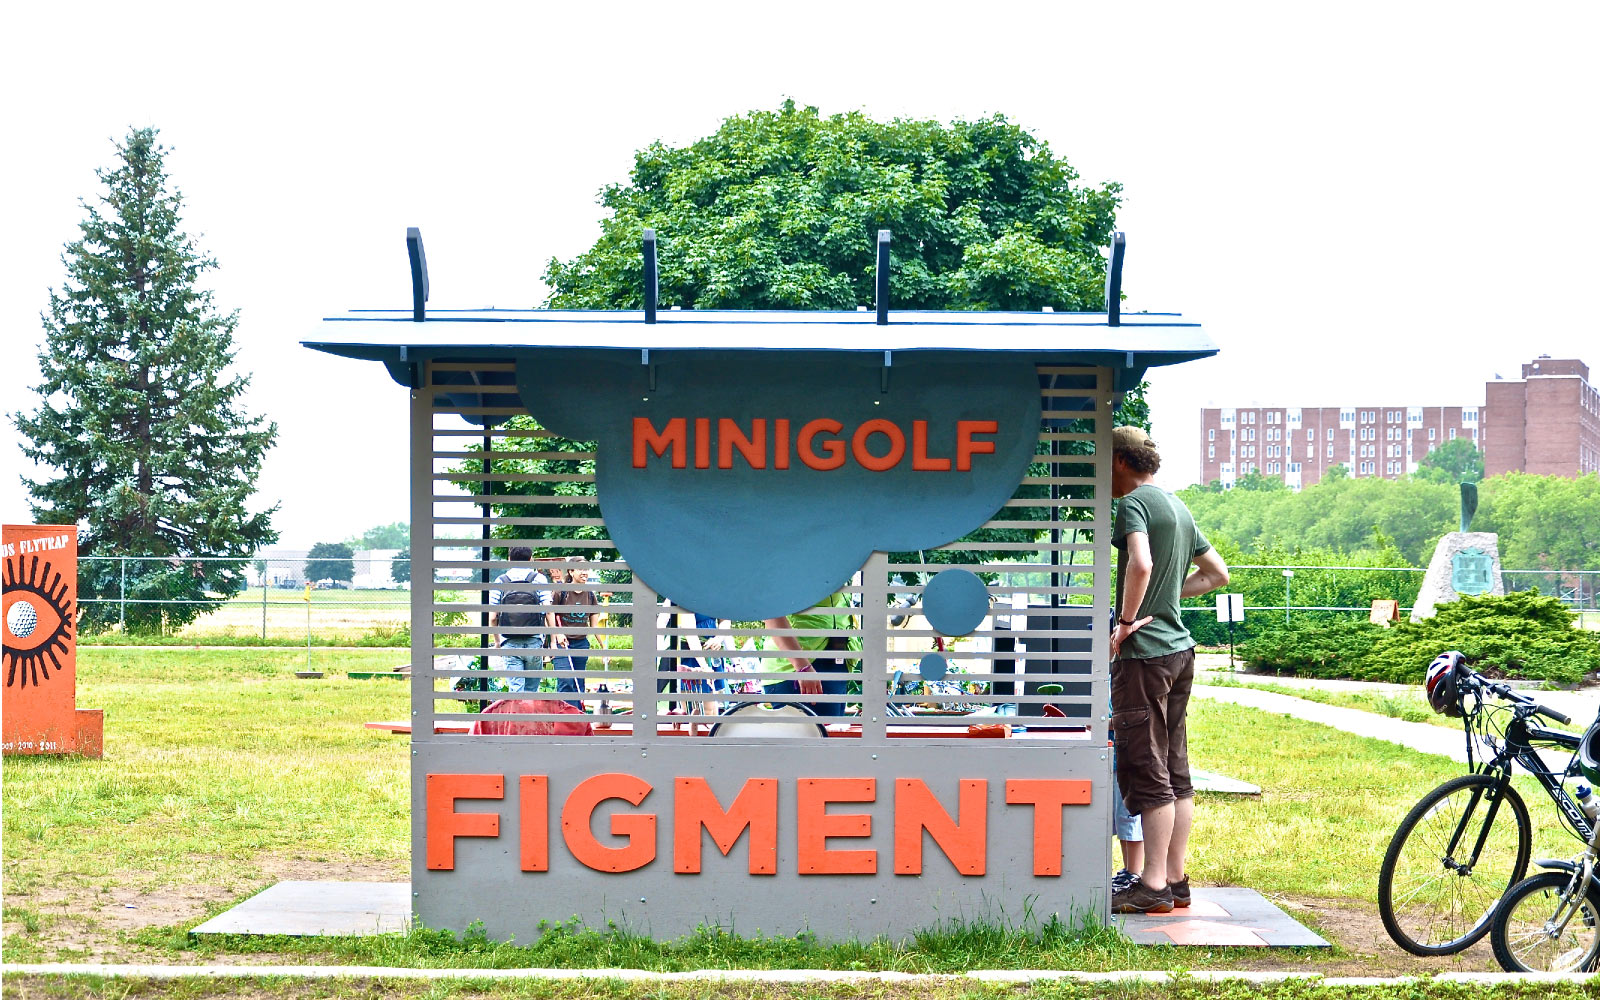 Figment-Minigolf